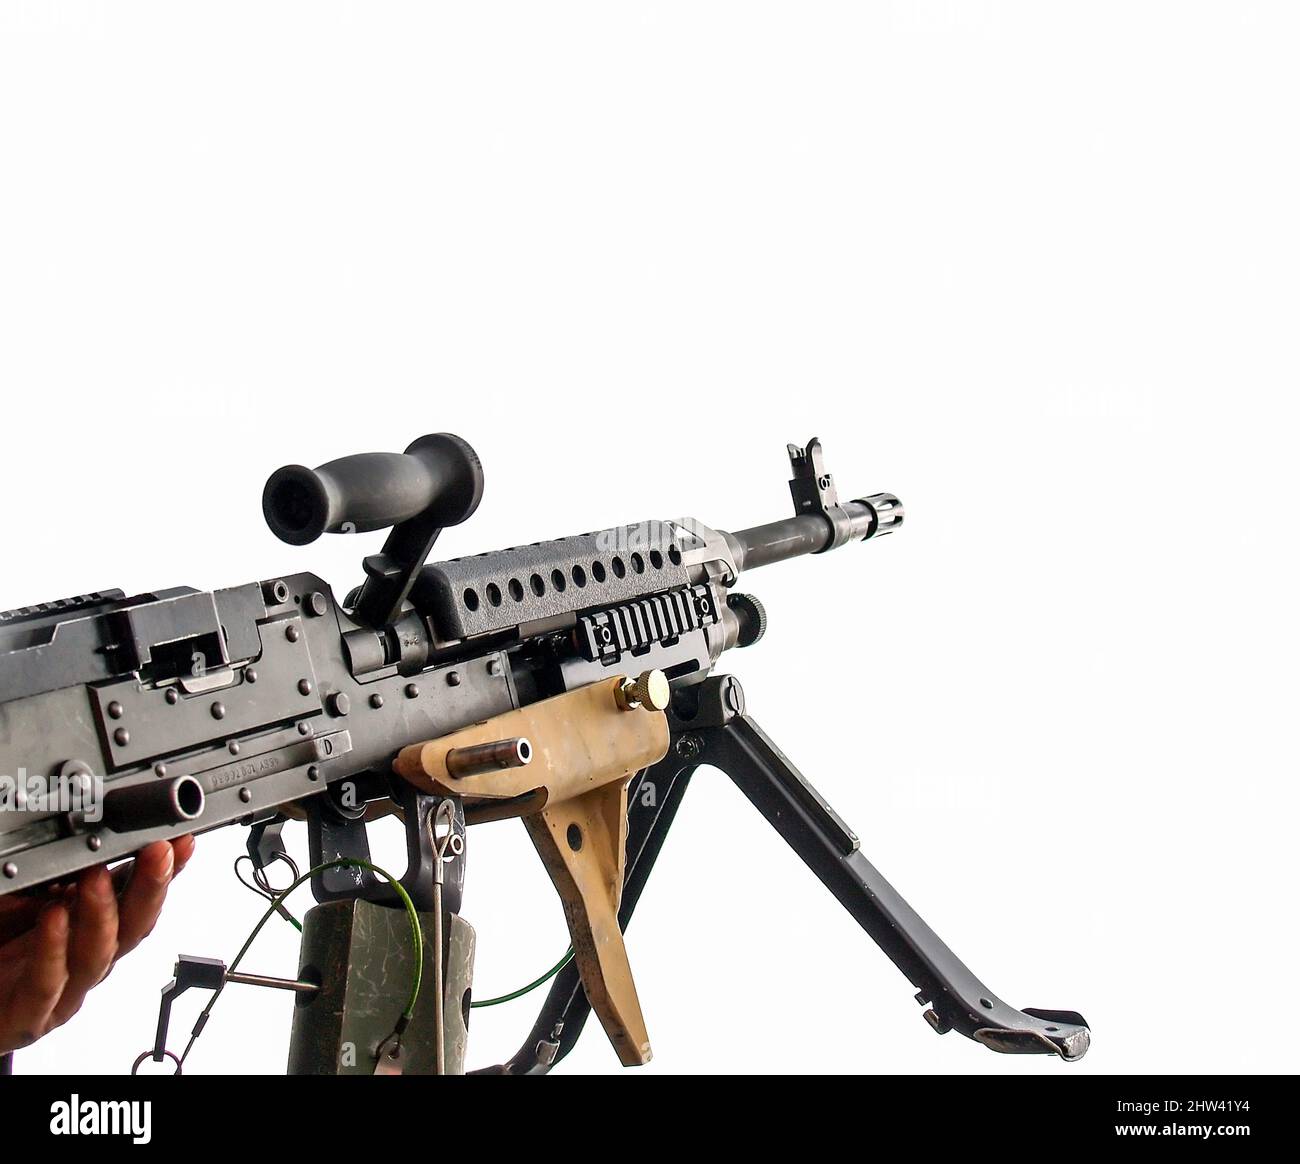 M249 mitrailleuse légère (LMG), également connue sous le nom d'arme automatique Squad M249 (SAW) démontrée par un cadet à l'Académie militaire de West point des États-Unis Banque D'Images